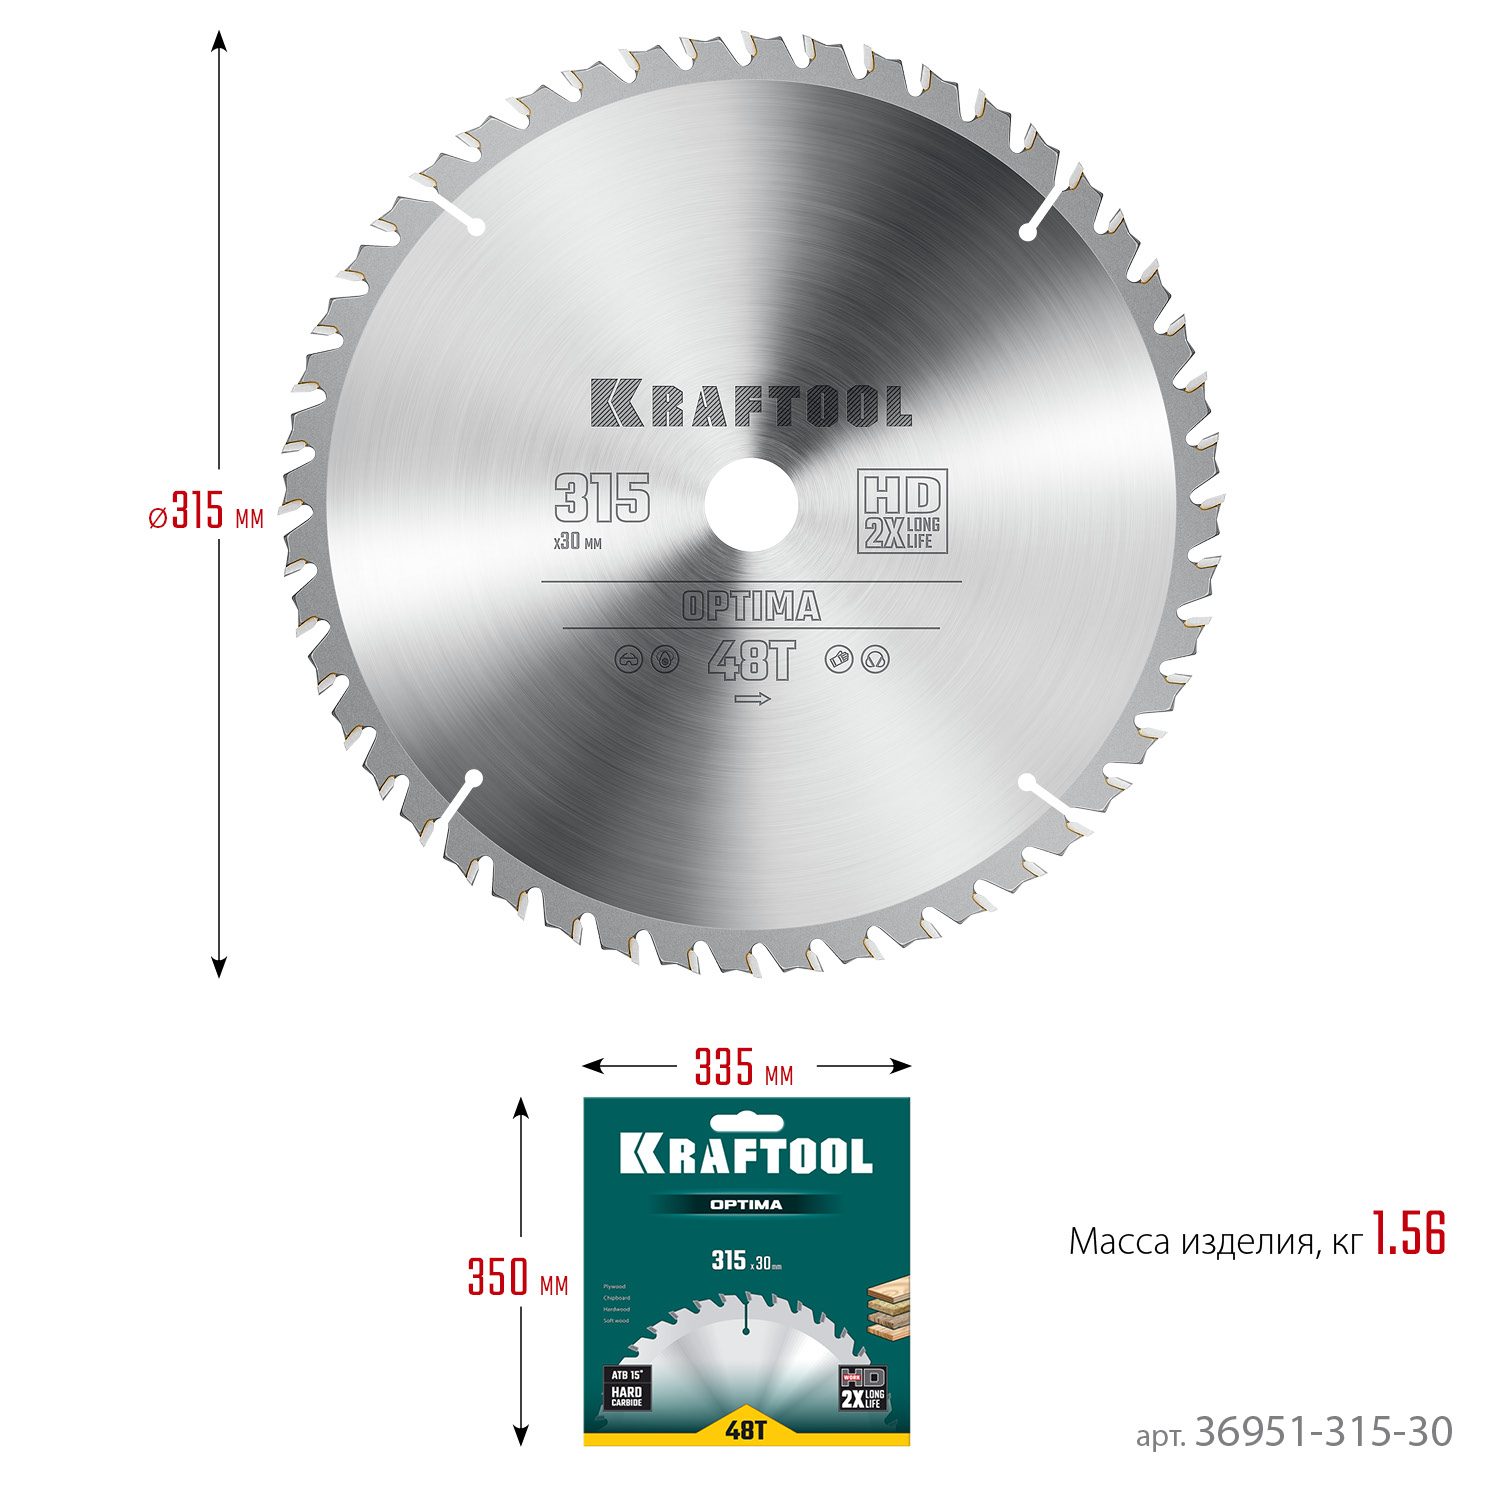 KRAFTOOL Optima, 315 х 30 мм, 48Т, пильный диск по дереву (36951-315-30)